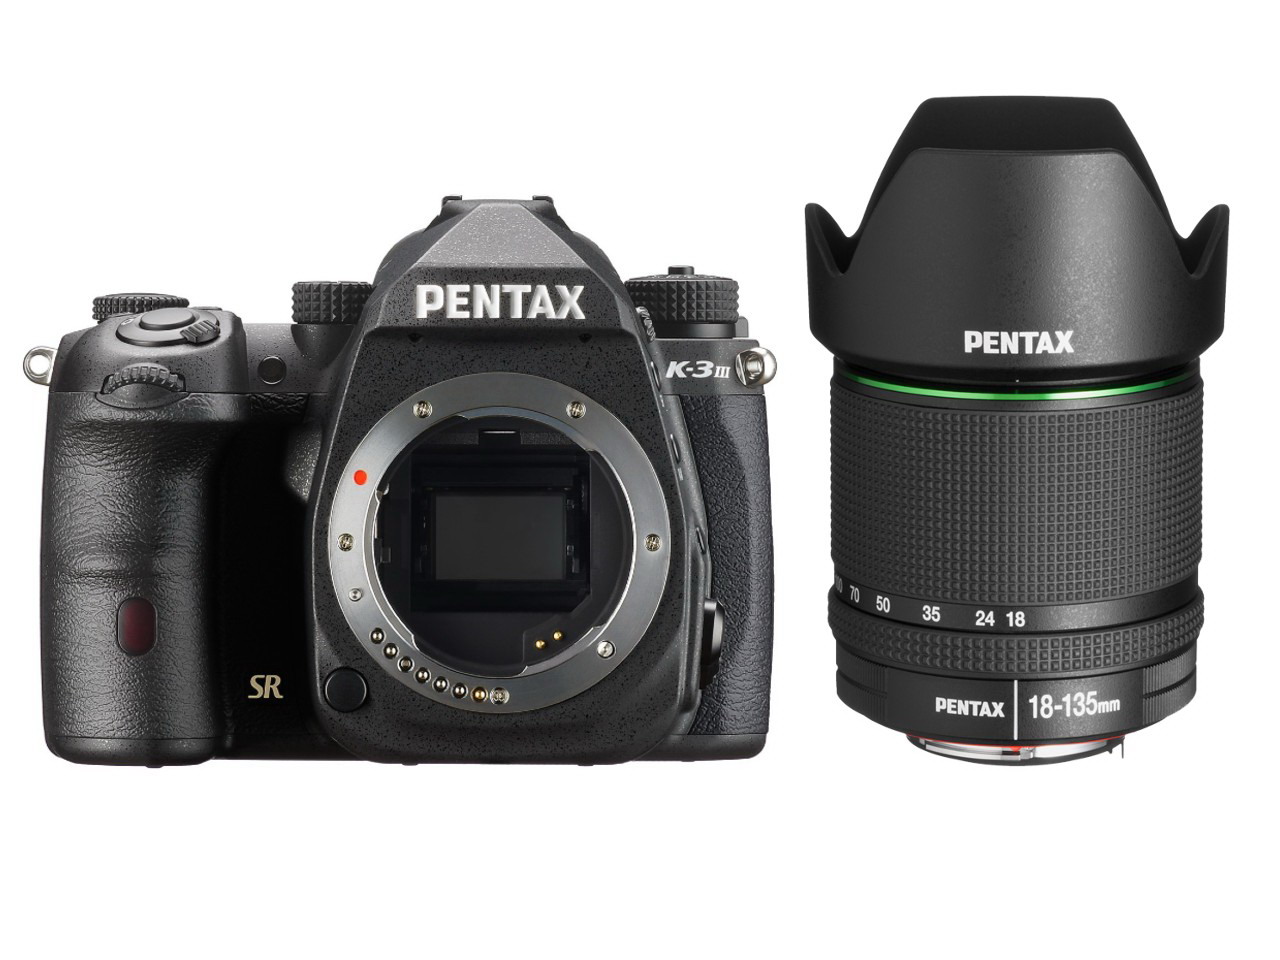 Pentax K-3 Mark III + 18-135mm - Fovi AS - Pentax Pro Shop